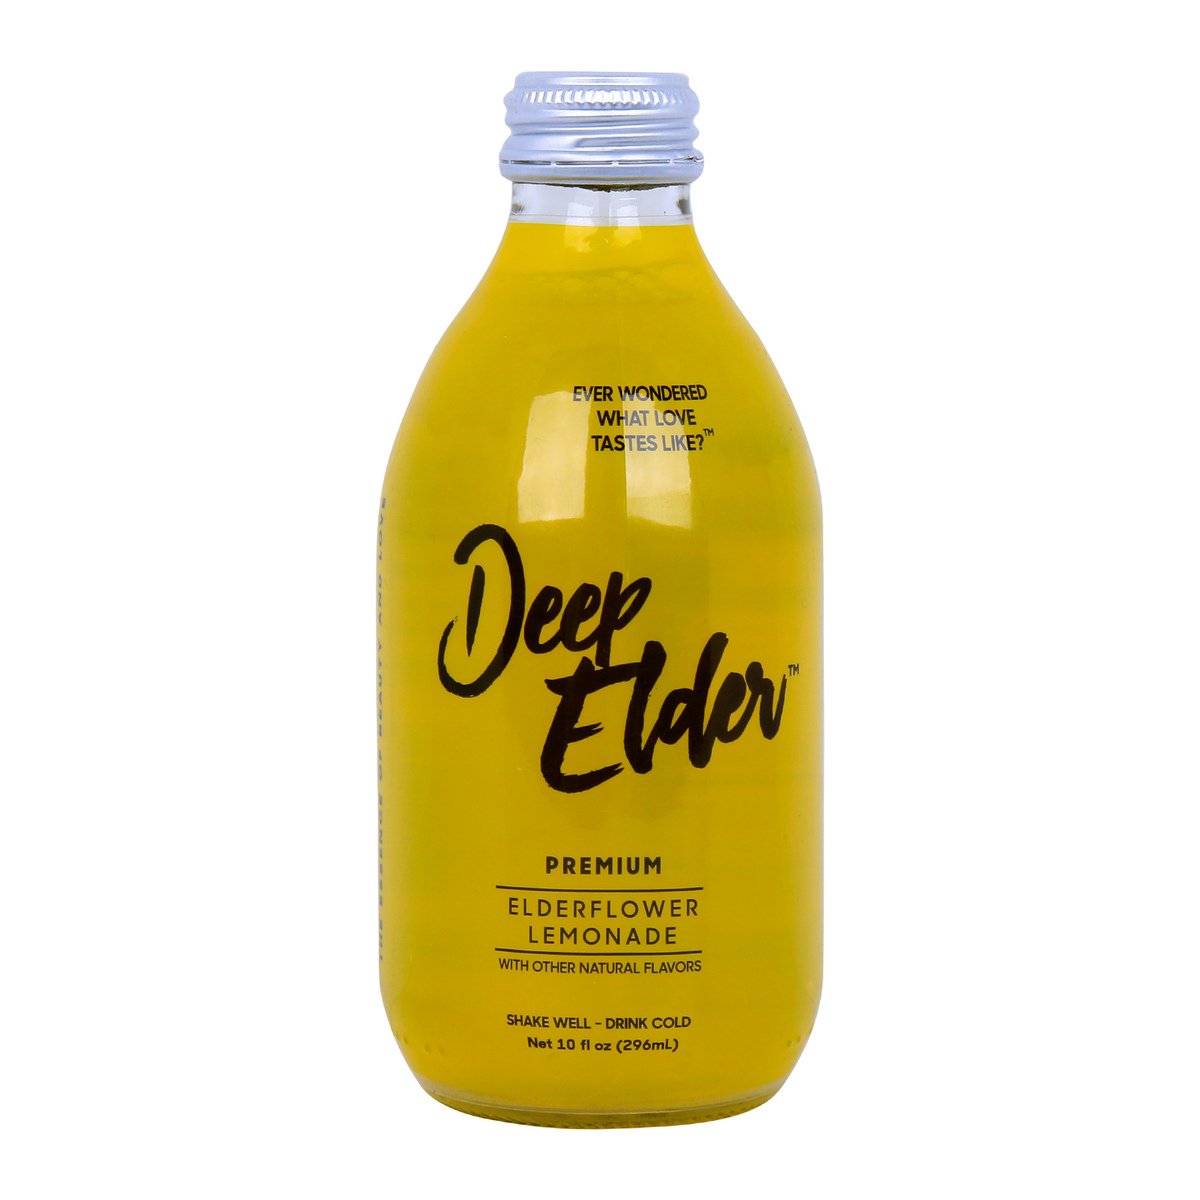 Deep Elder Premium Elderflower Lemonade 296ml